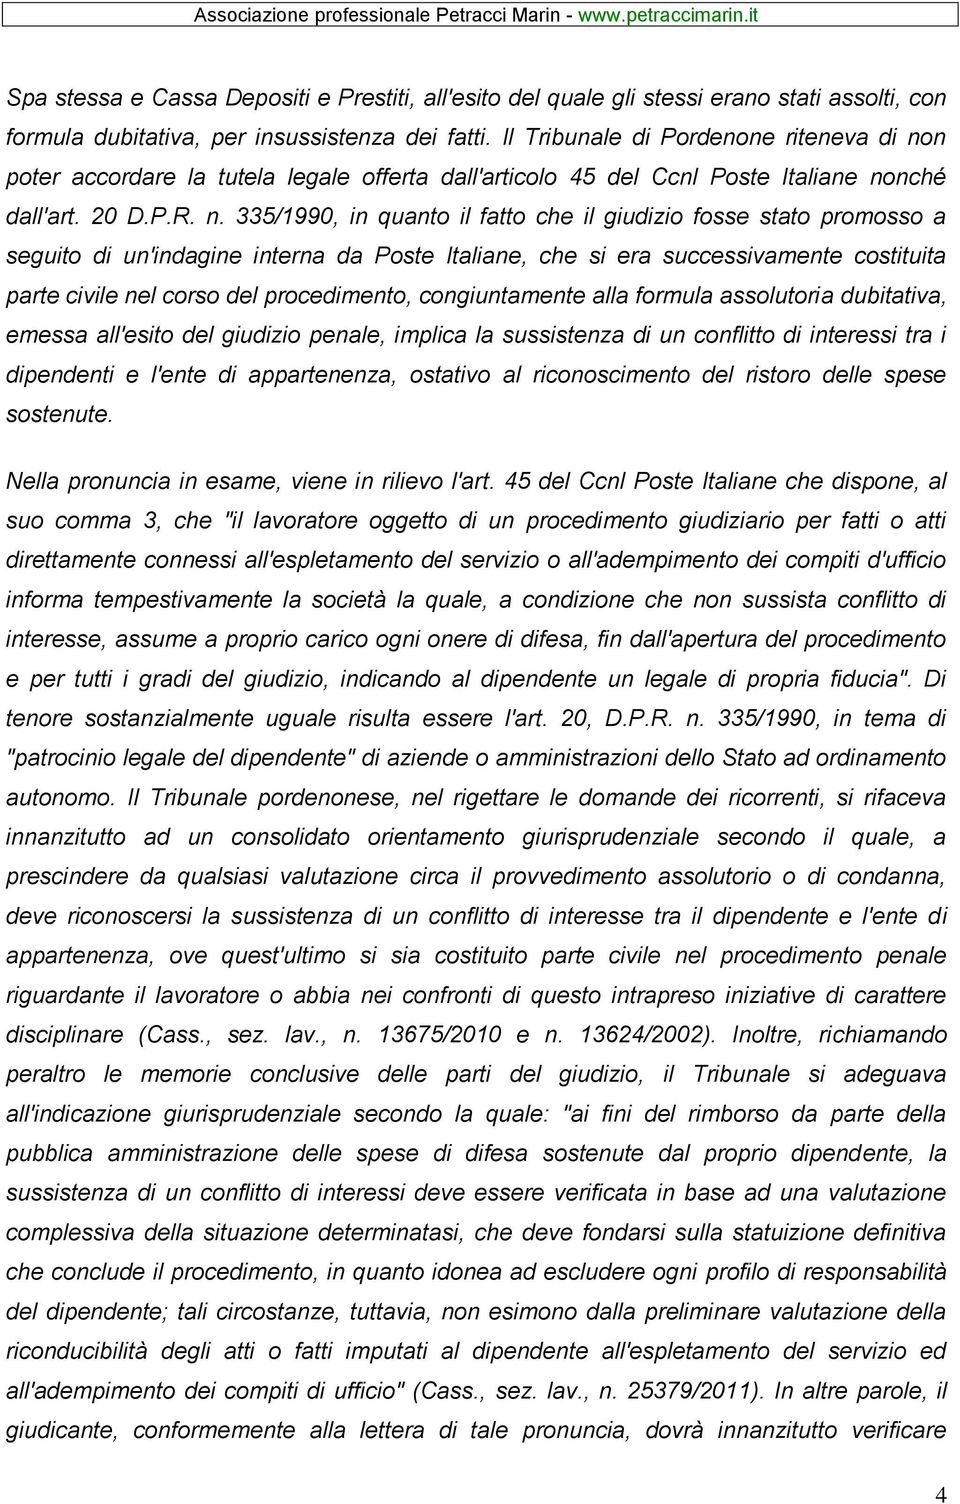 n poter accordare la tutela legale offerta dall'articolo 45 del Ccnl Poste Italiane no